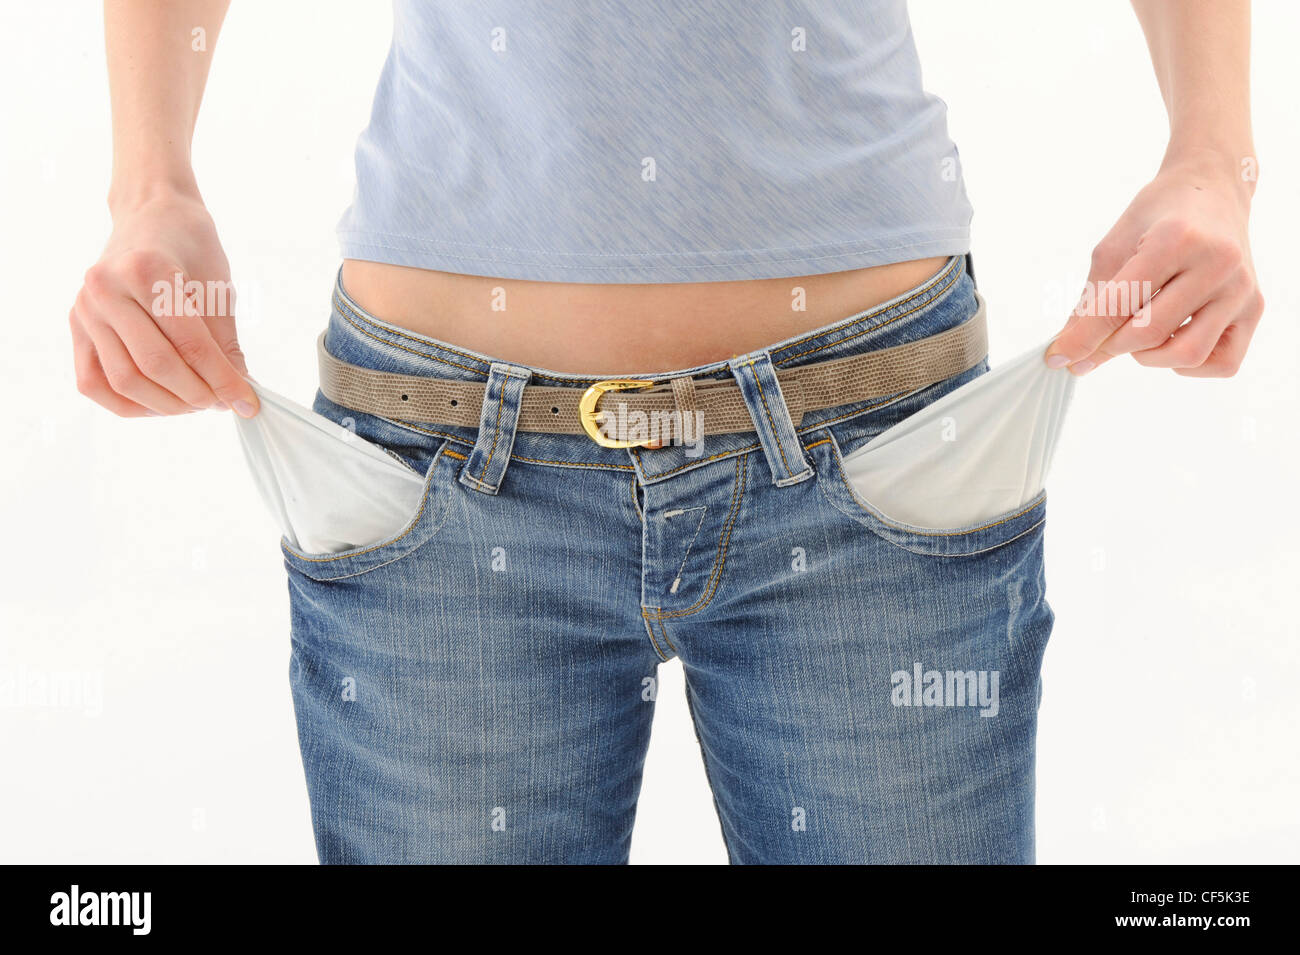 Femme portant un haut gris et jeans avec ceinture brune, tirant des deux  mains poches vides Photo Stock - Alamy